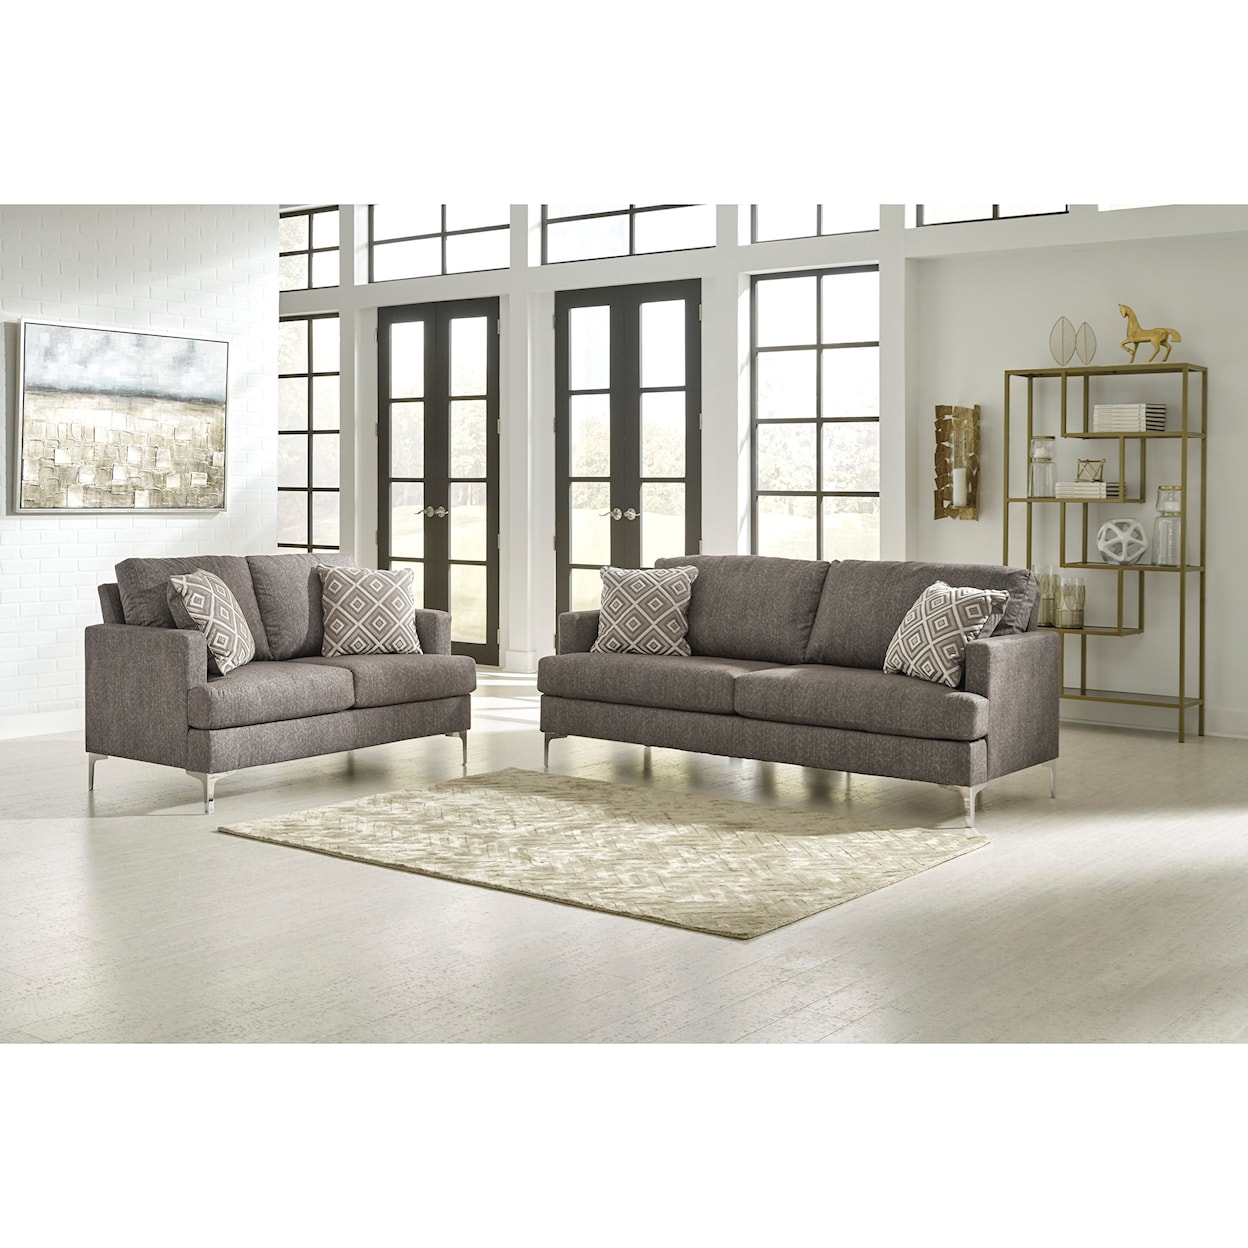 Michael Alan Select Arcola Stationary Living Room Group